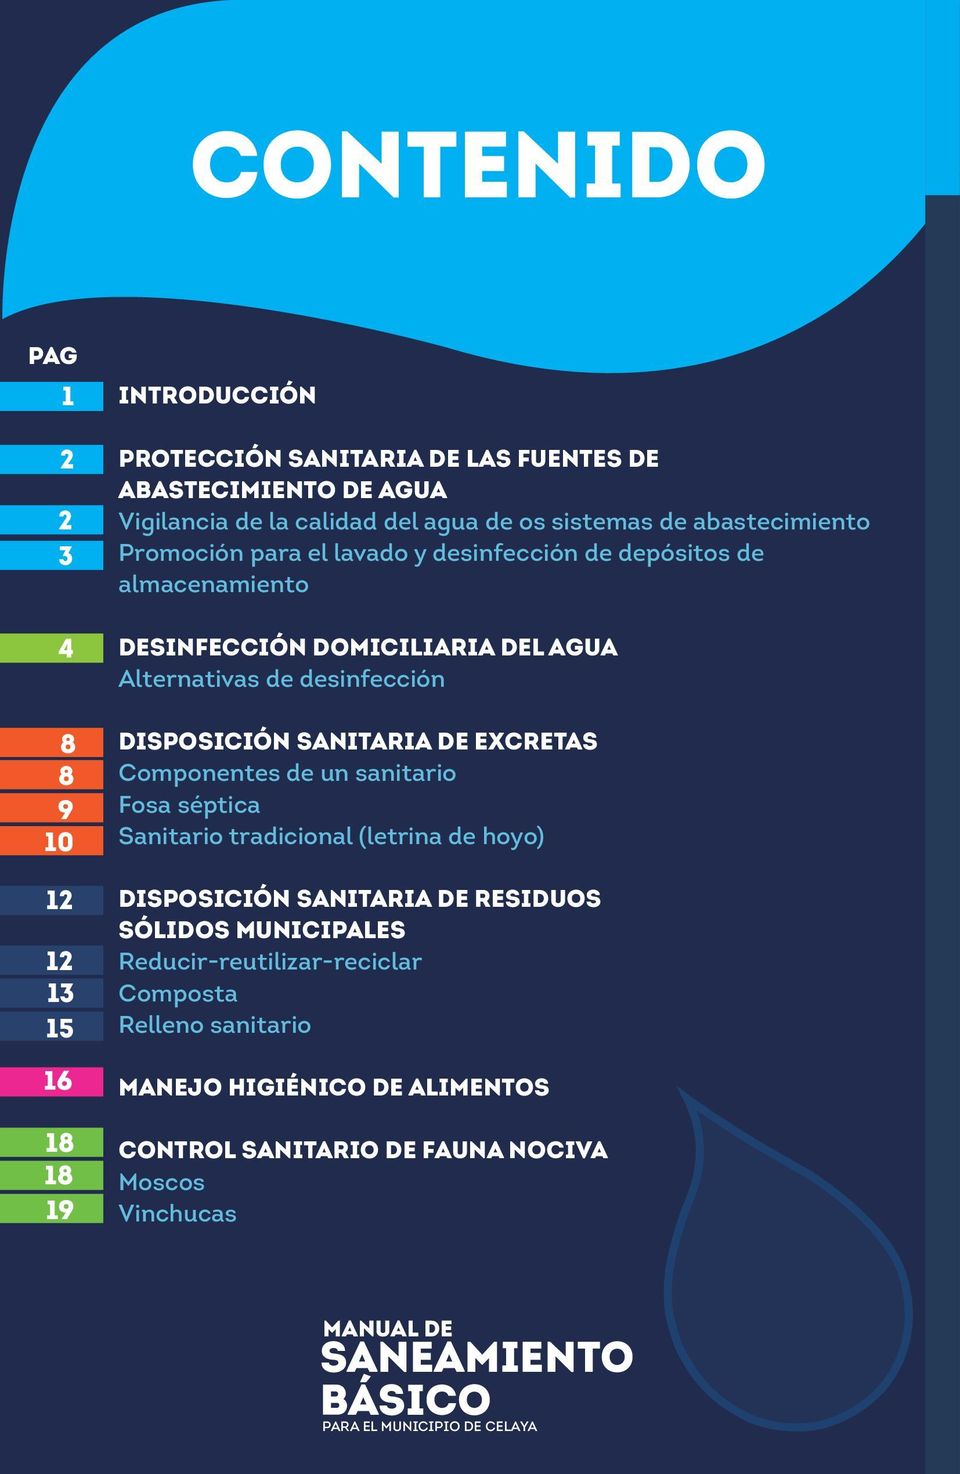 SANITARIA DE EXCRETAS Componentes de un sanitario Fosa séptica Sanitario tradicional (letrina de hoyo) DISPOSICIÓN SANITARIA DE RESIDUOS SÓLIDOS MUNICIPALES